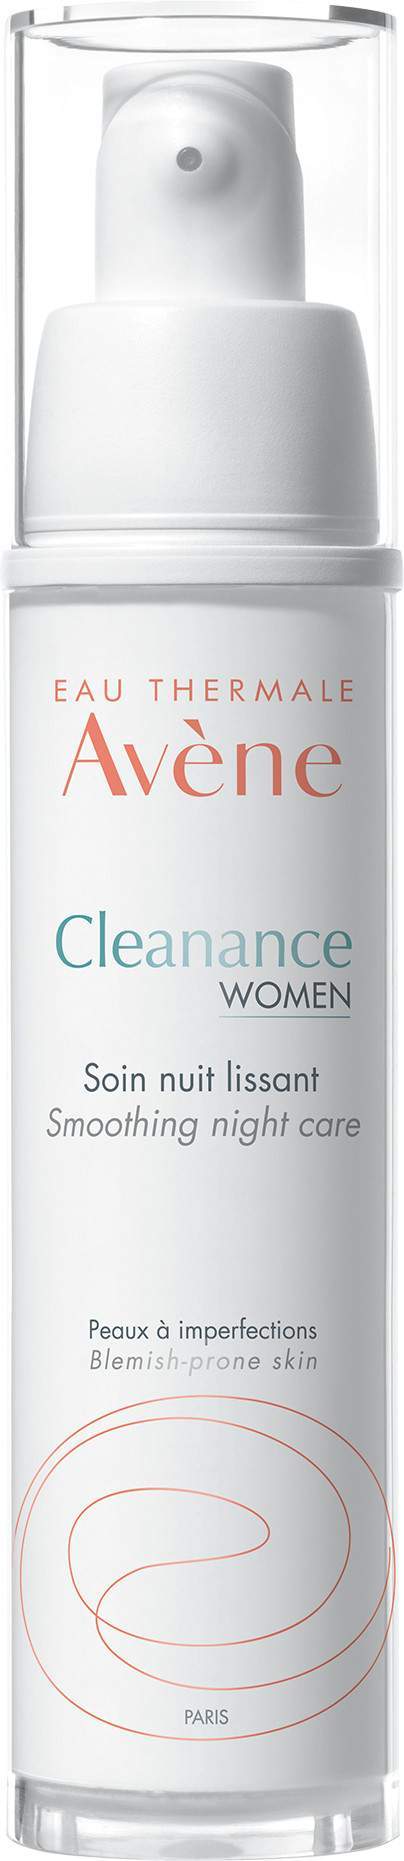 AVENE Cleanance Women Night Care 30 ml